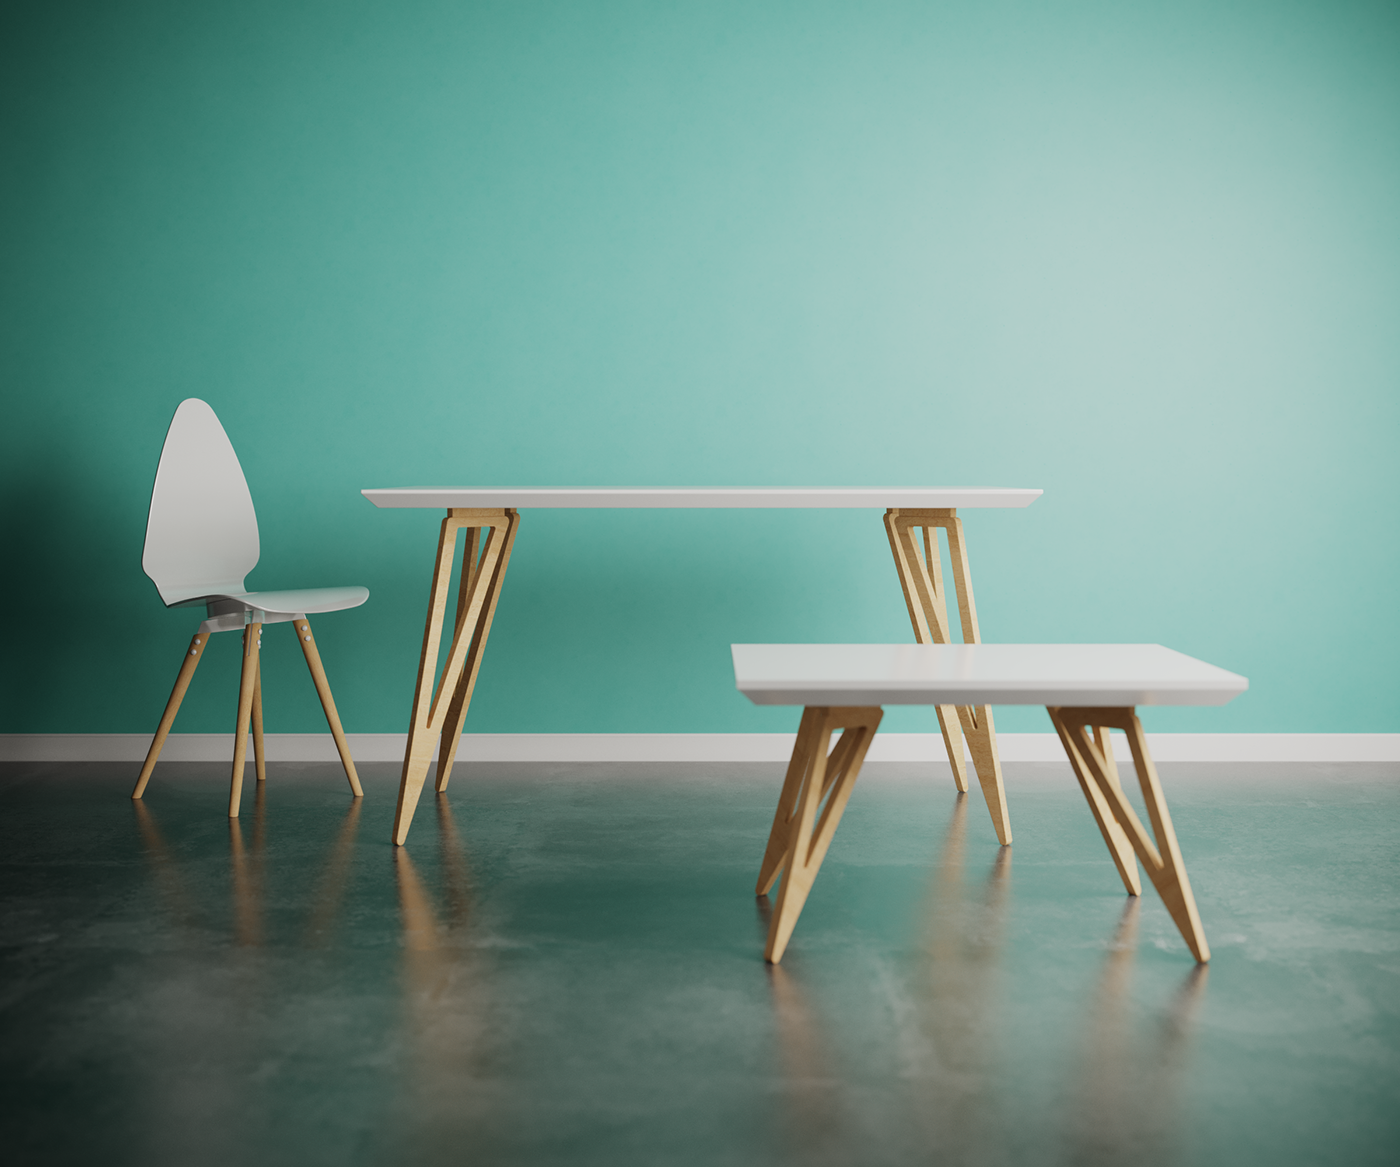 CGI furniture corona Render rendering 3d modeling interior design  product design  Charlie Pommier